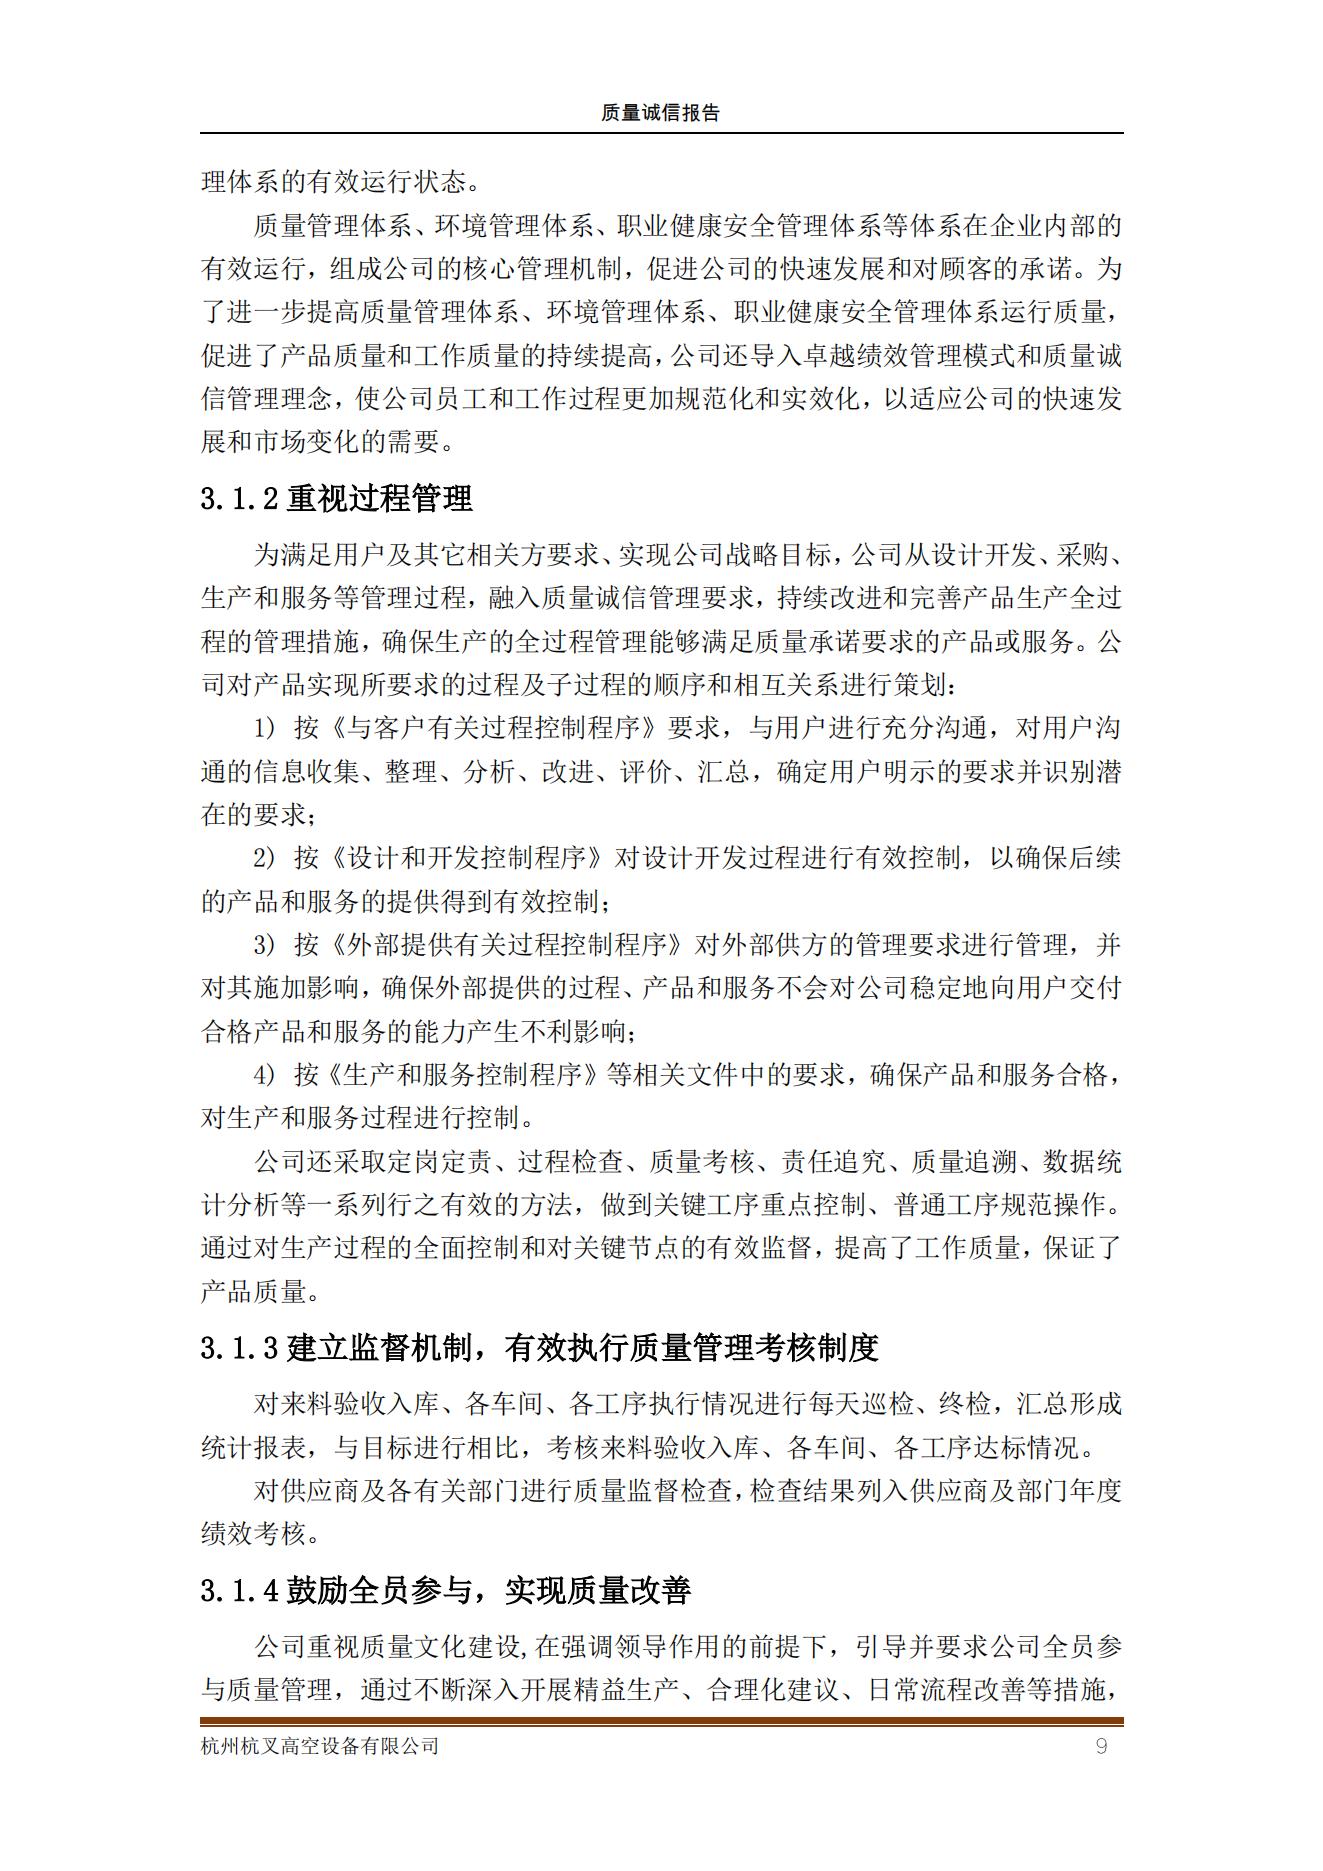 杭州杭叉高空設備公司2021年質量誠信報告(圖9)